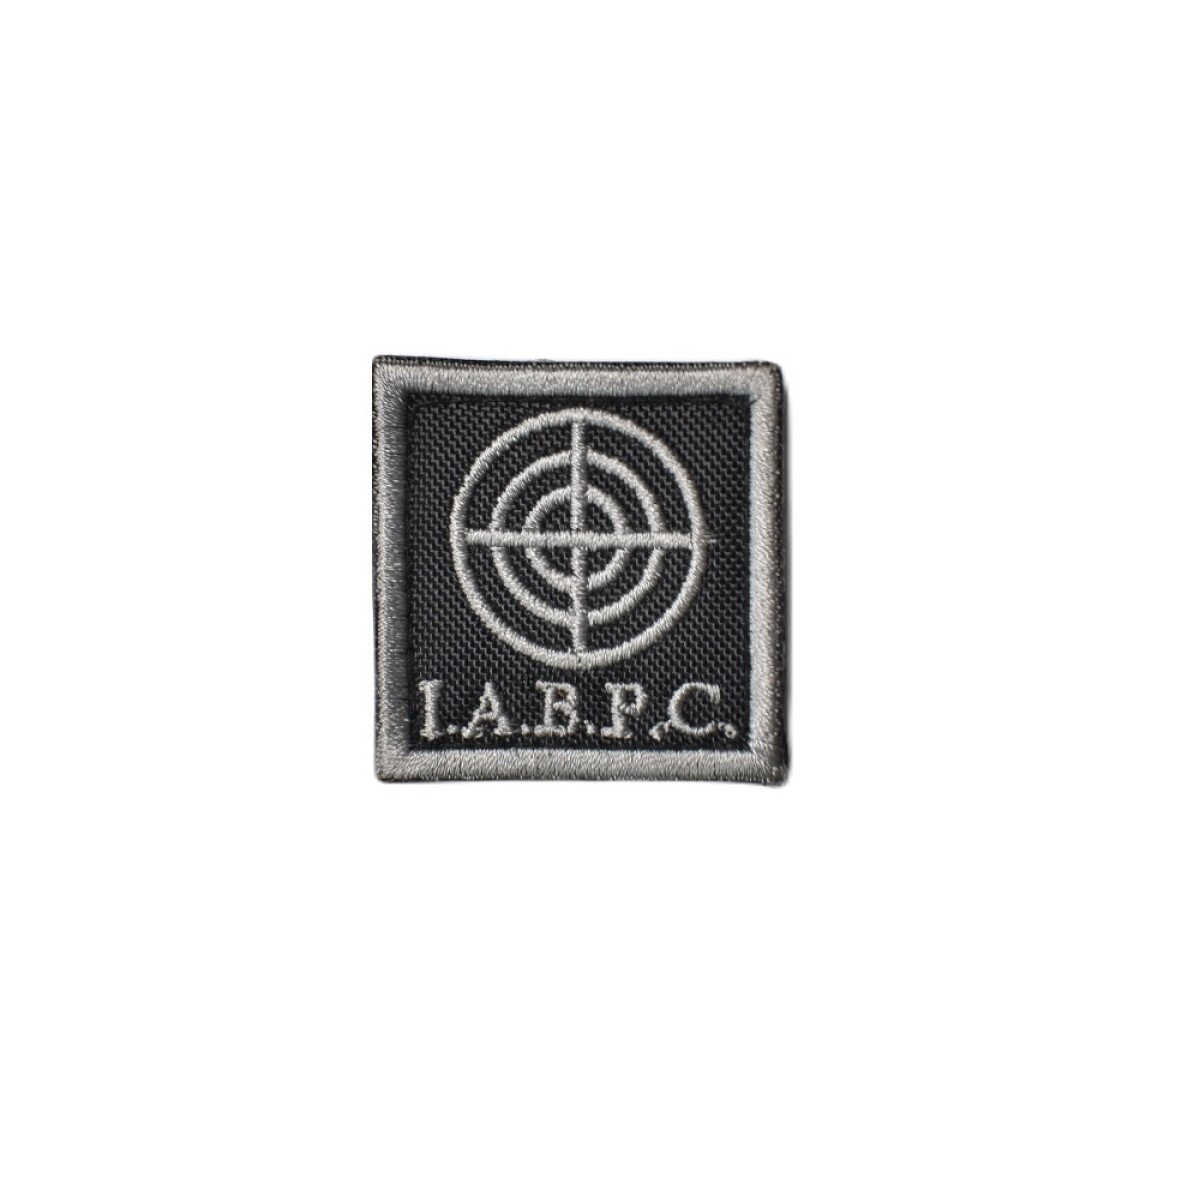 Parche bordado I.A.B.P.C. - Instancia de Adiestramiento Básico de Puntería de Combate - Negro 